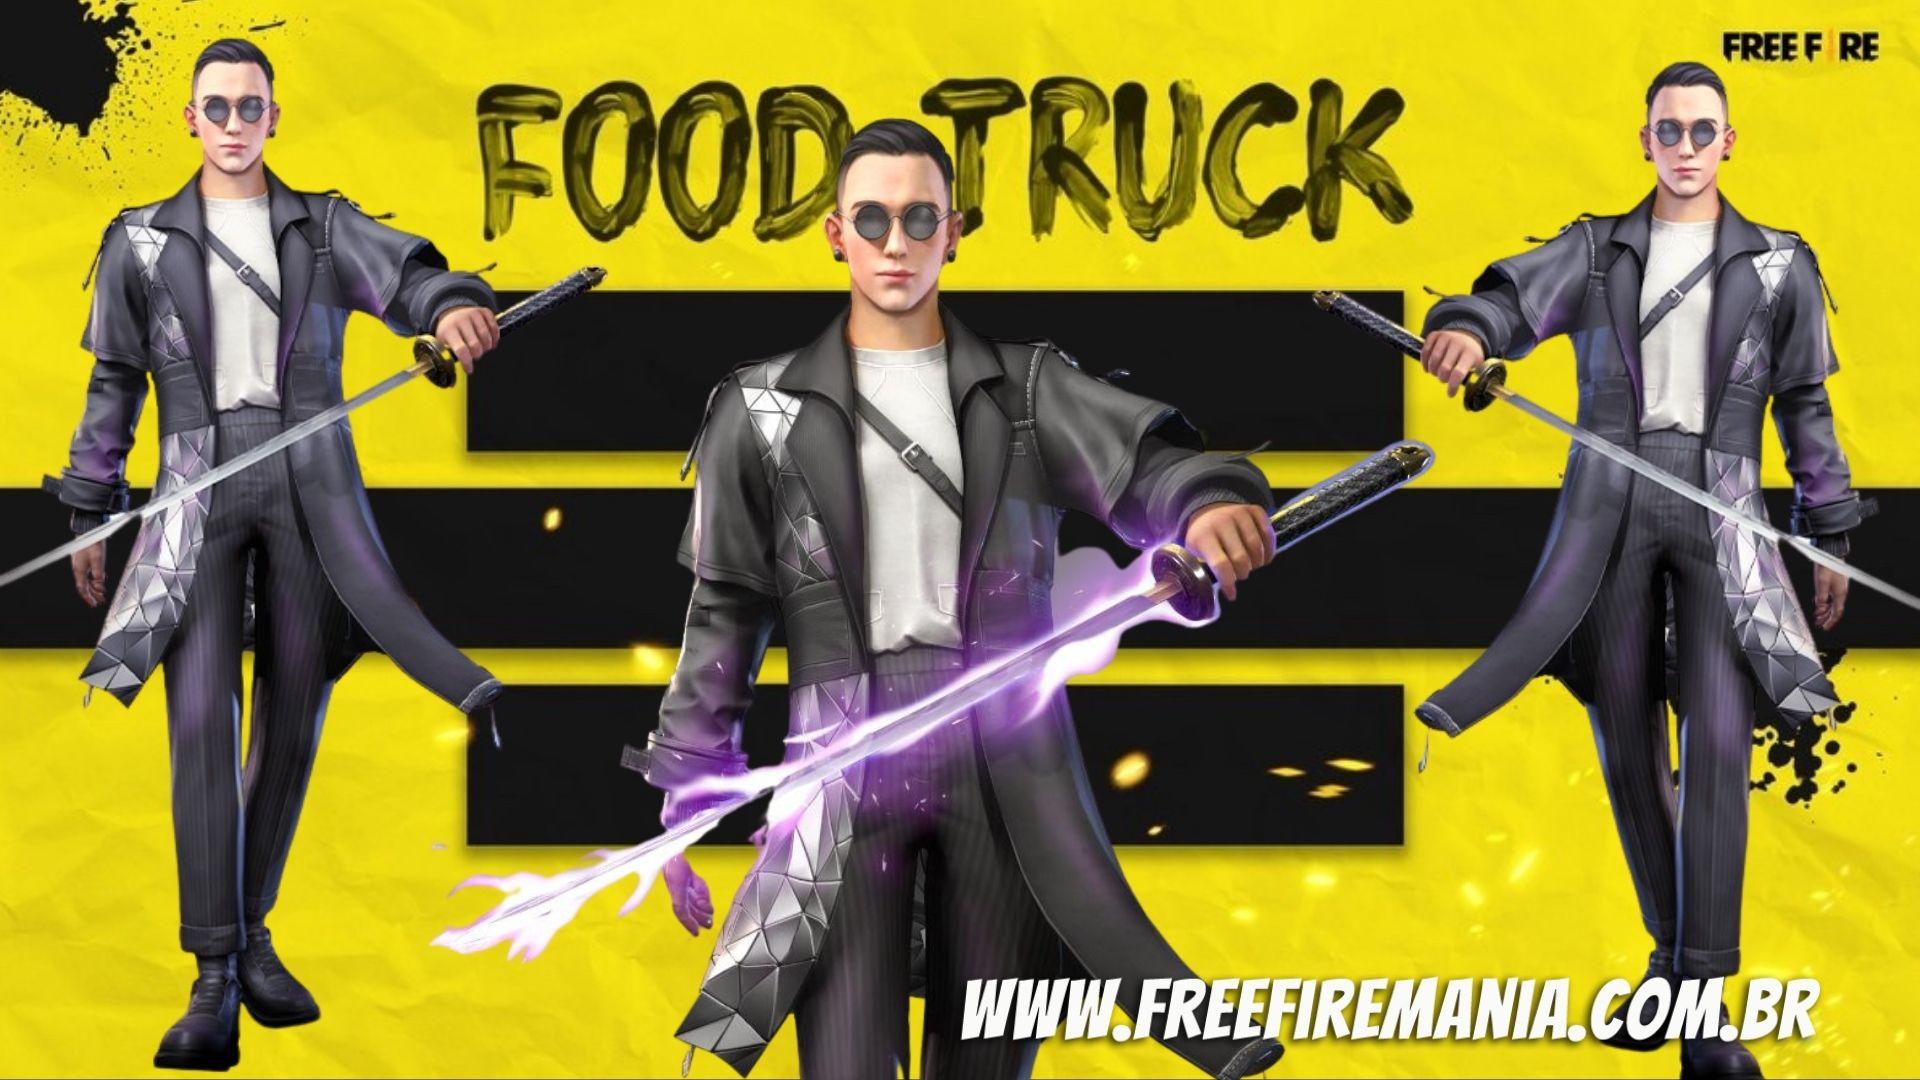 Praça de Food Truck está de volta ao Free Fire nesta quarta (22) com Muso Prismático e Dino